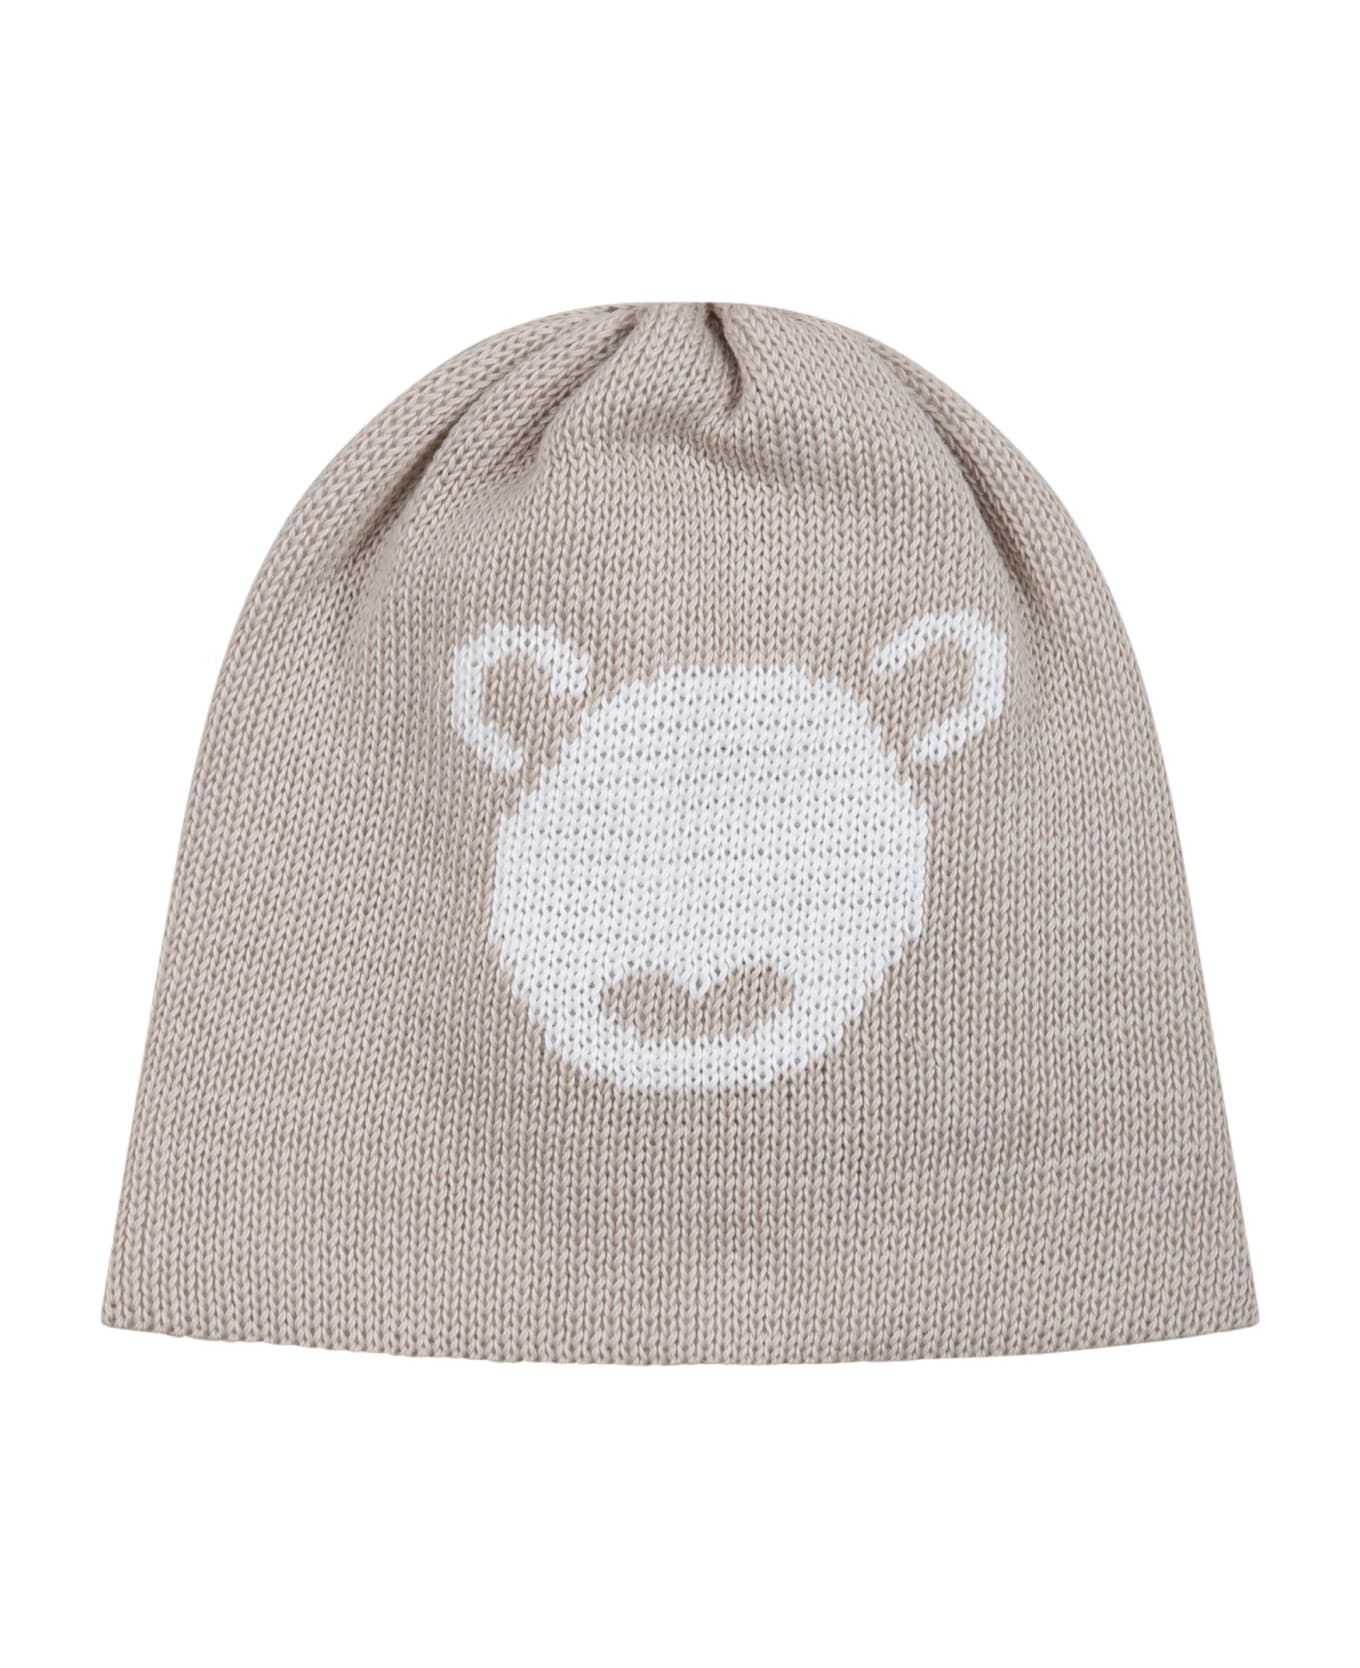 Little Bear Beige Hat For Babies With Bear - Beige